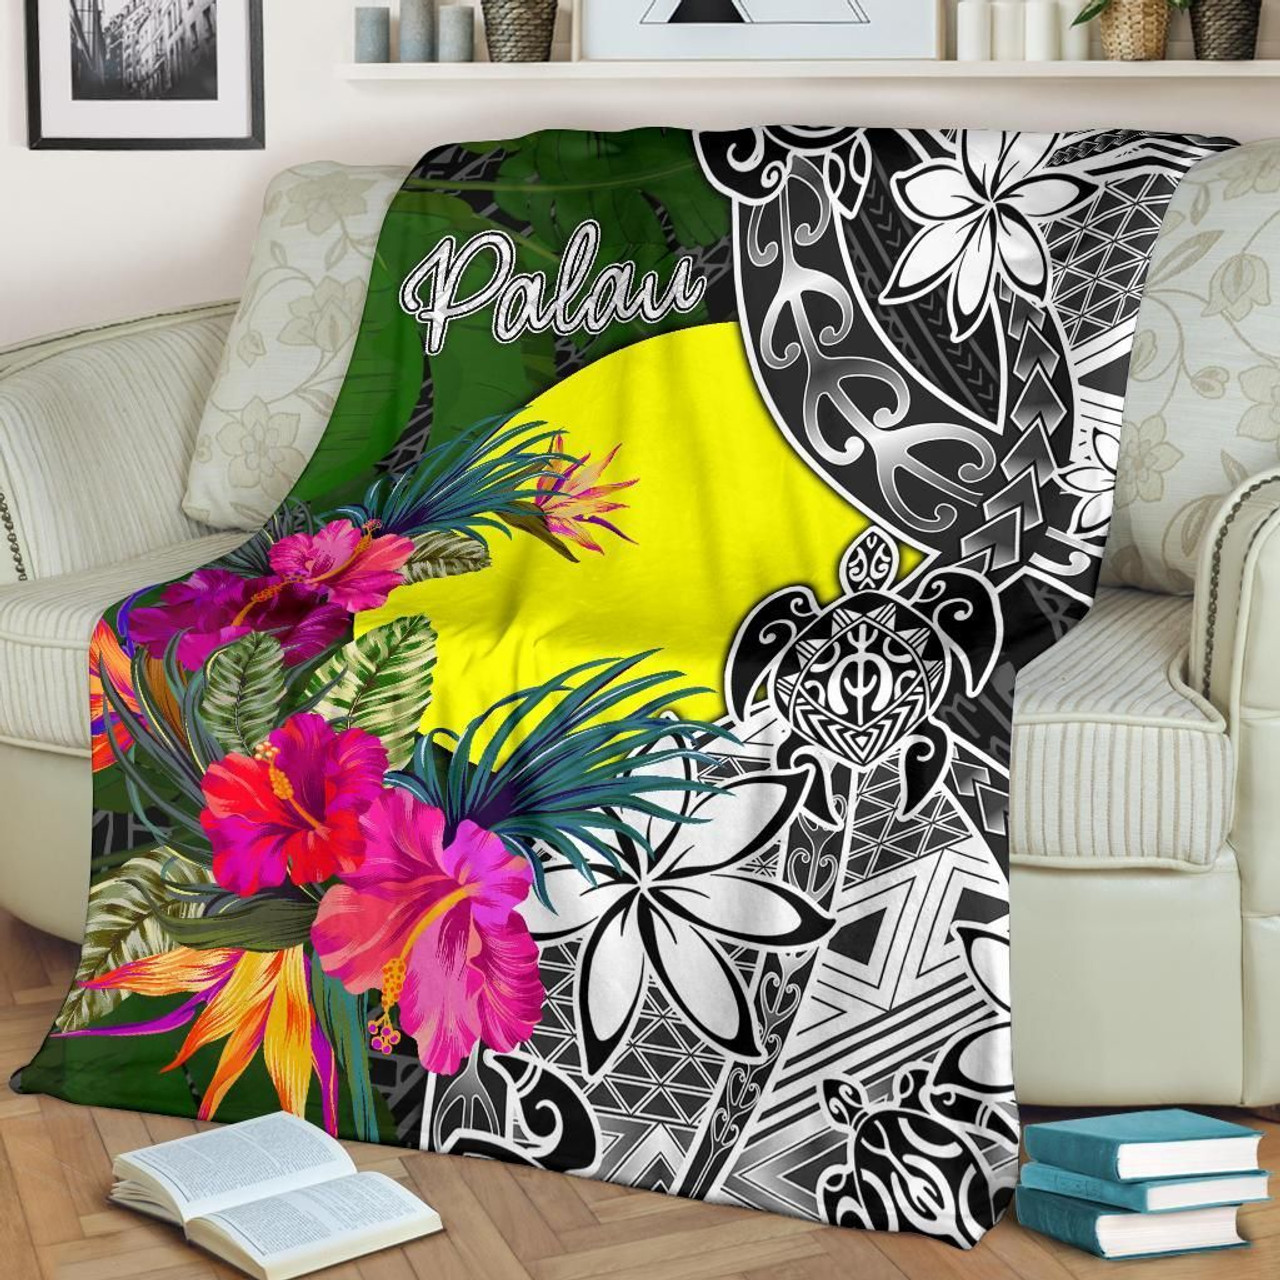 Palau Premium Blanket - Turtle Plumeria Banana Leaf 2